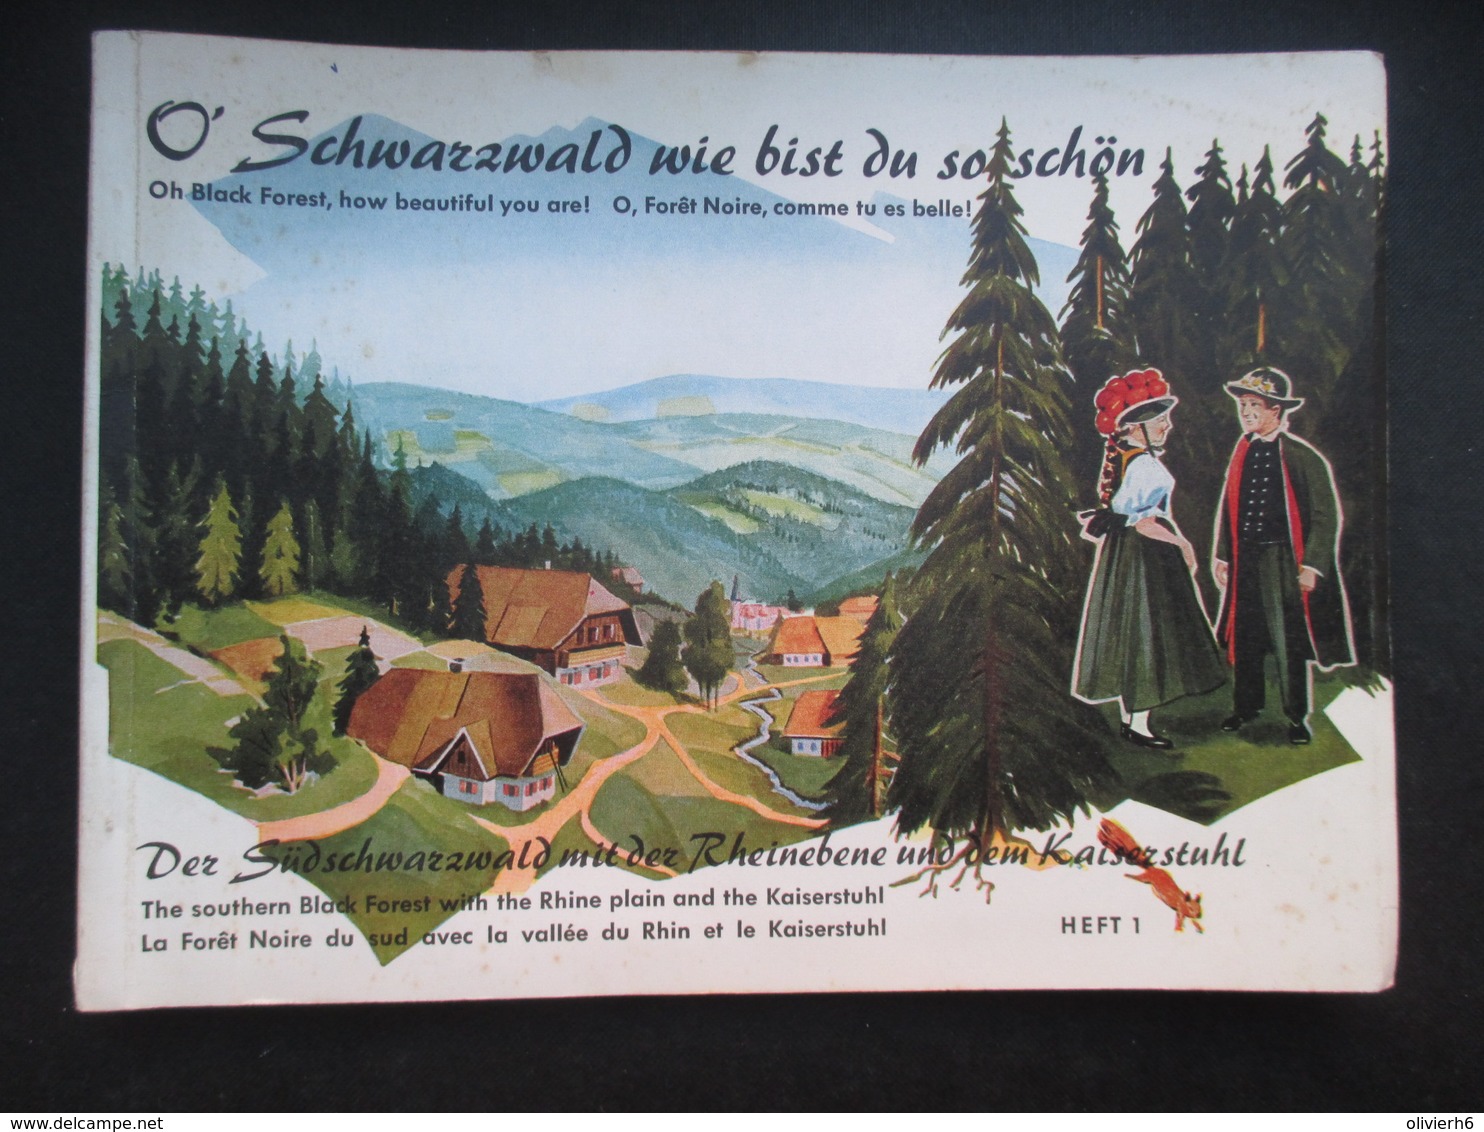 DéPLIANT TOURISTIQUE (M1903) ALLEMAGNE (2 Vues) O' SCHWARZWALD Wie Bist Du So Schön HEFT 1 Années 60 Black Forest - Dépliants Touristiques